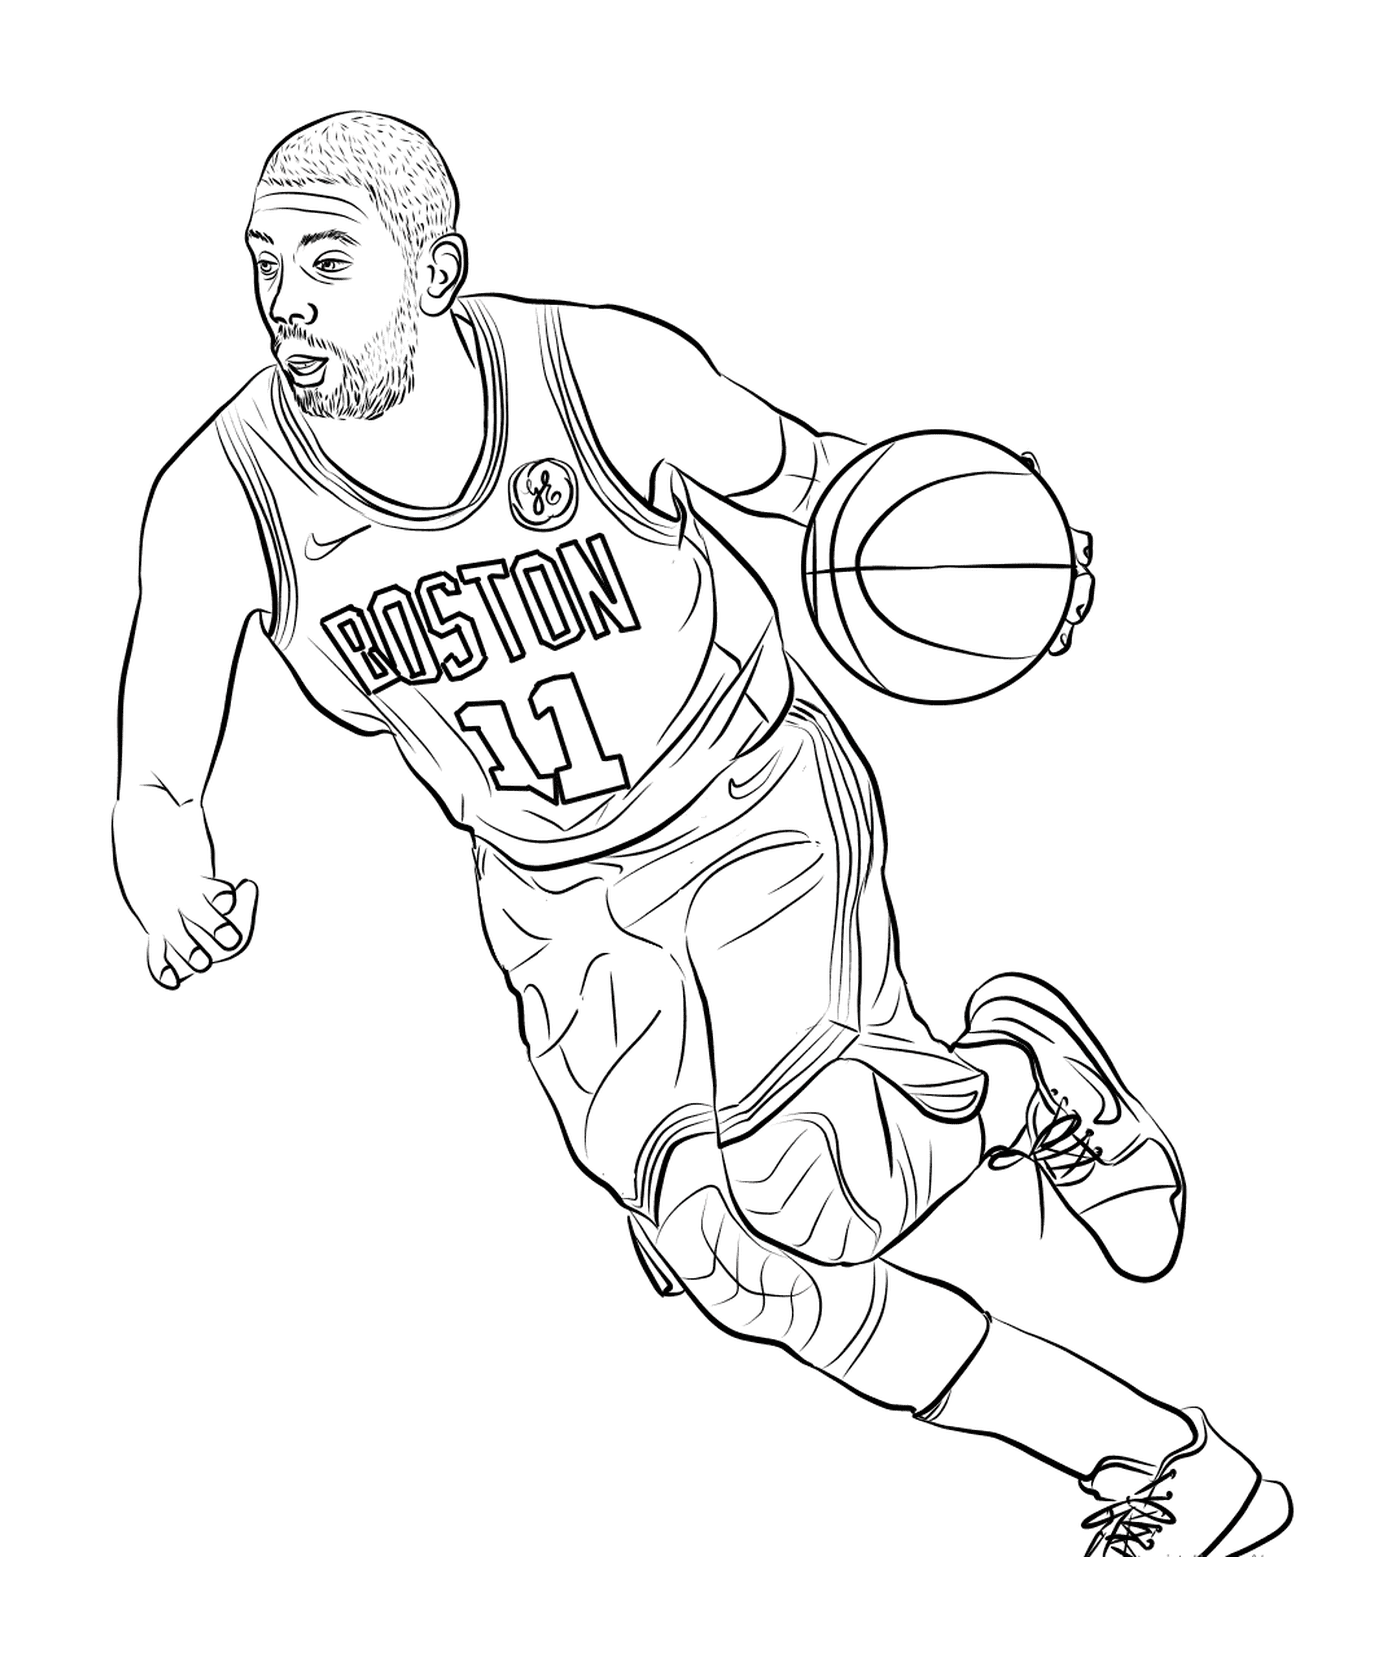  Кири Ирвинг играет в баскетбол 